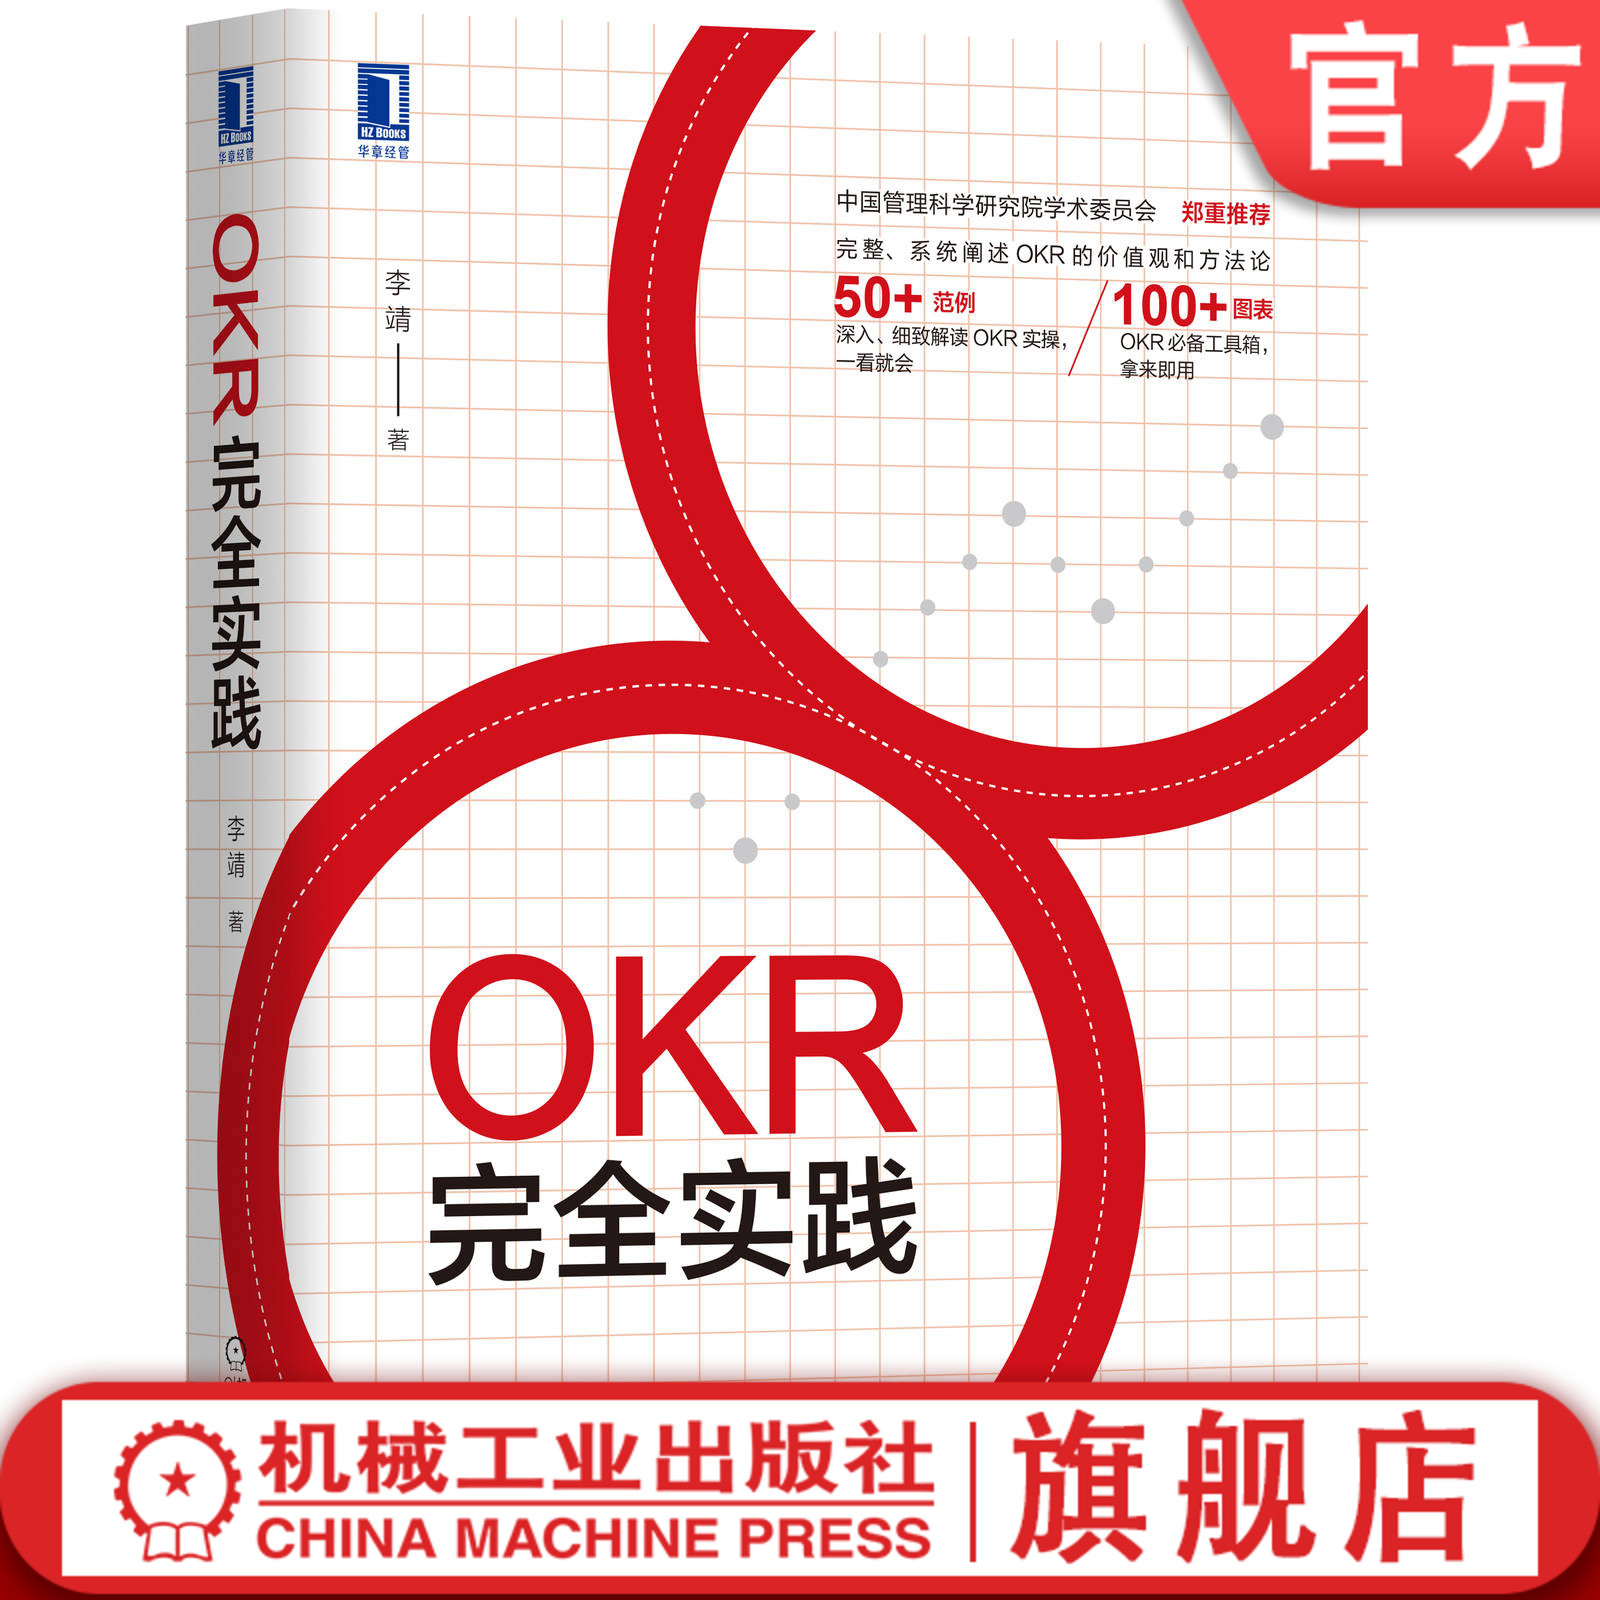 官网正版 OKR完全实践 李靖 价值观 方法论 范例 实操 图表 工具包 教练式管理技术 优化组织 规划设计 制定目标流程